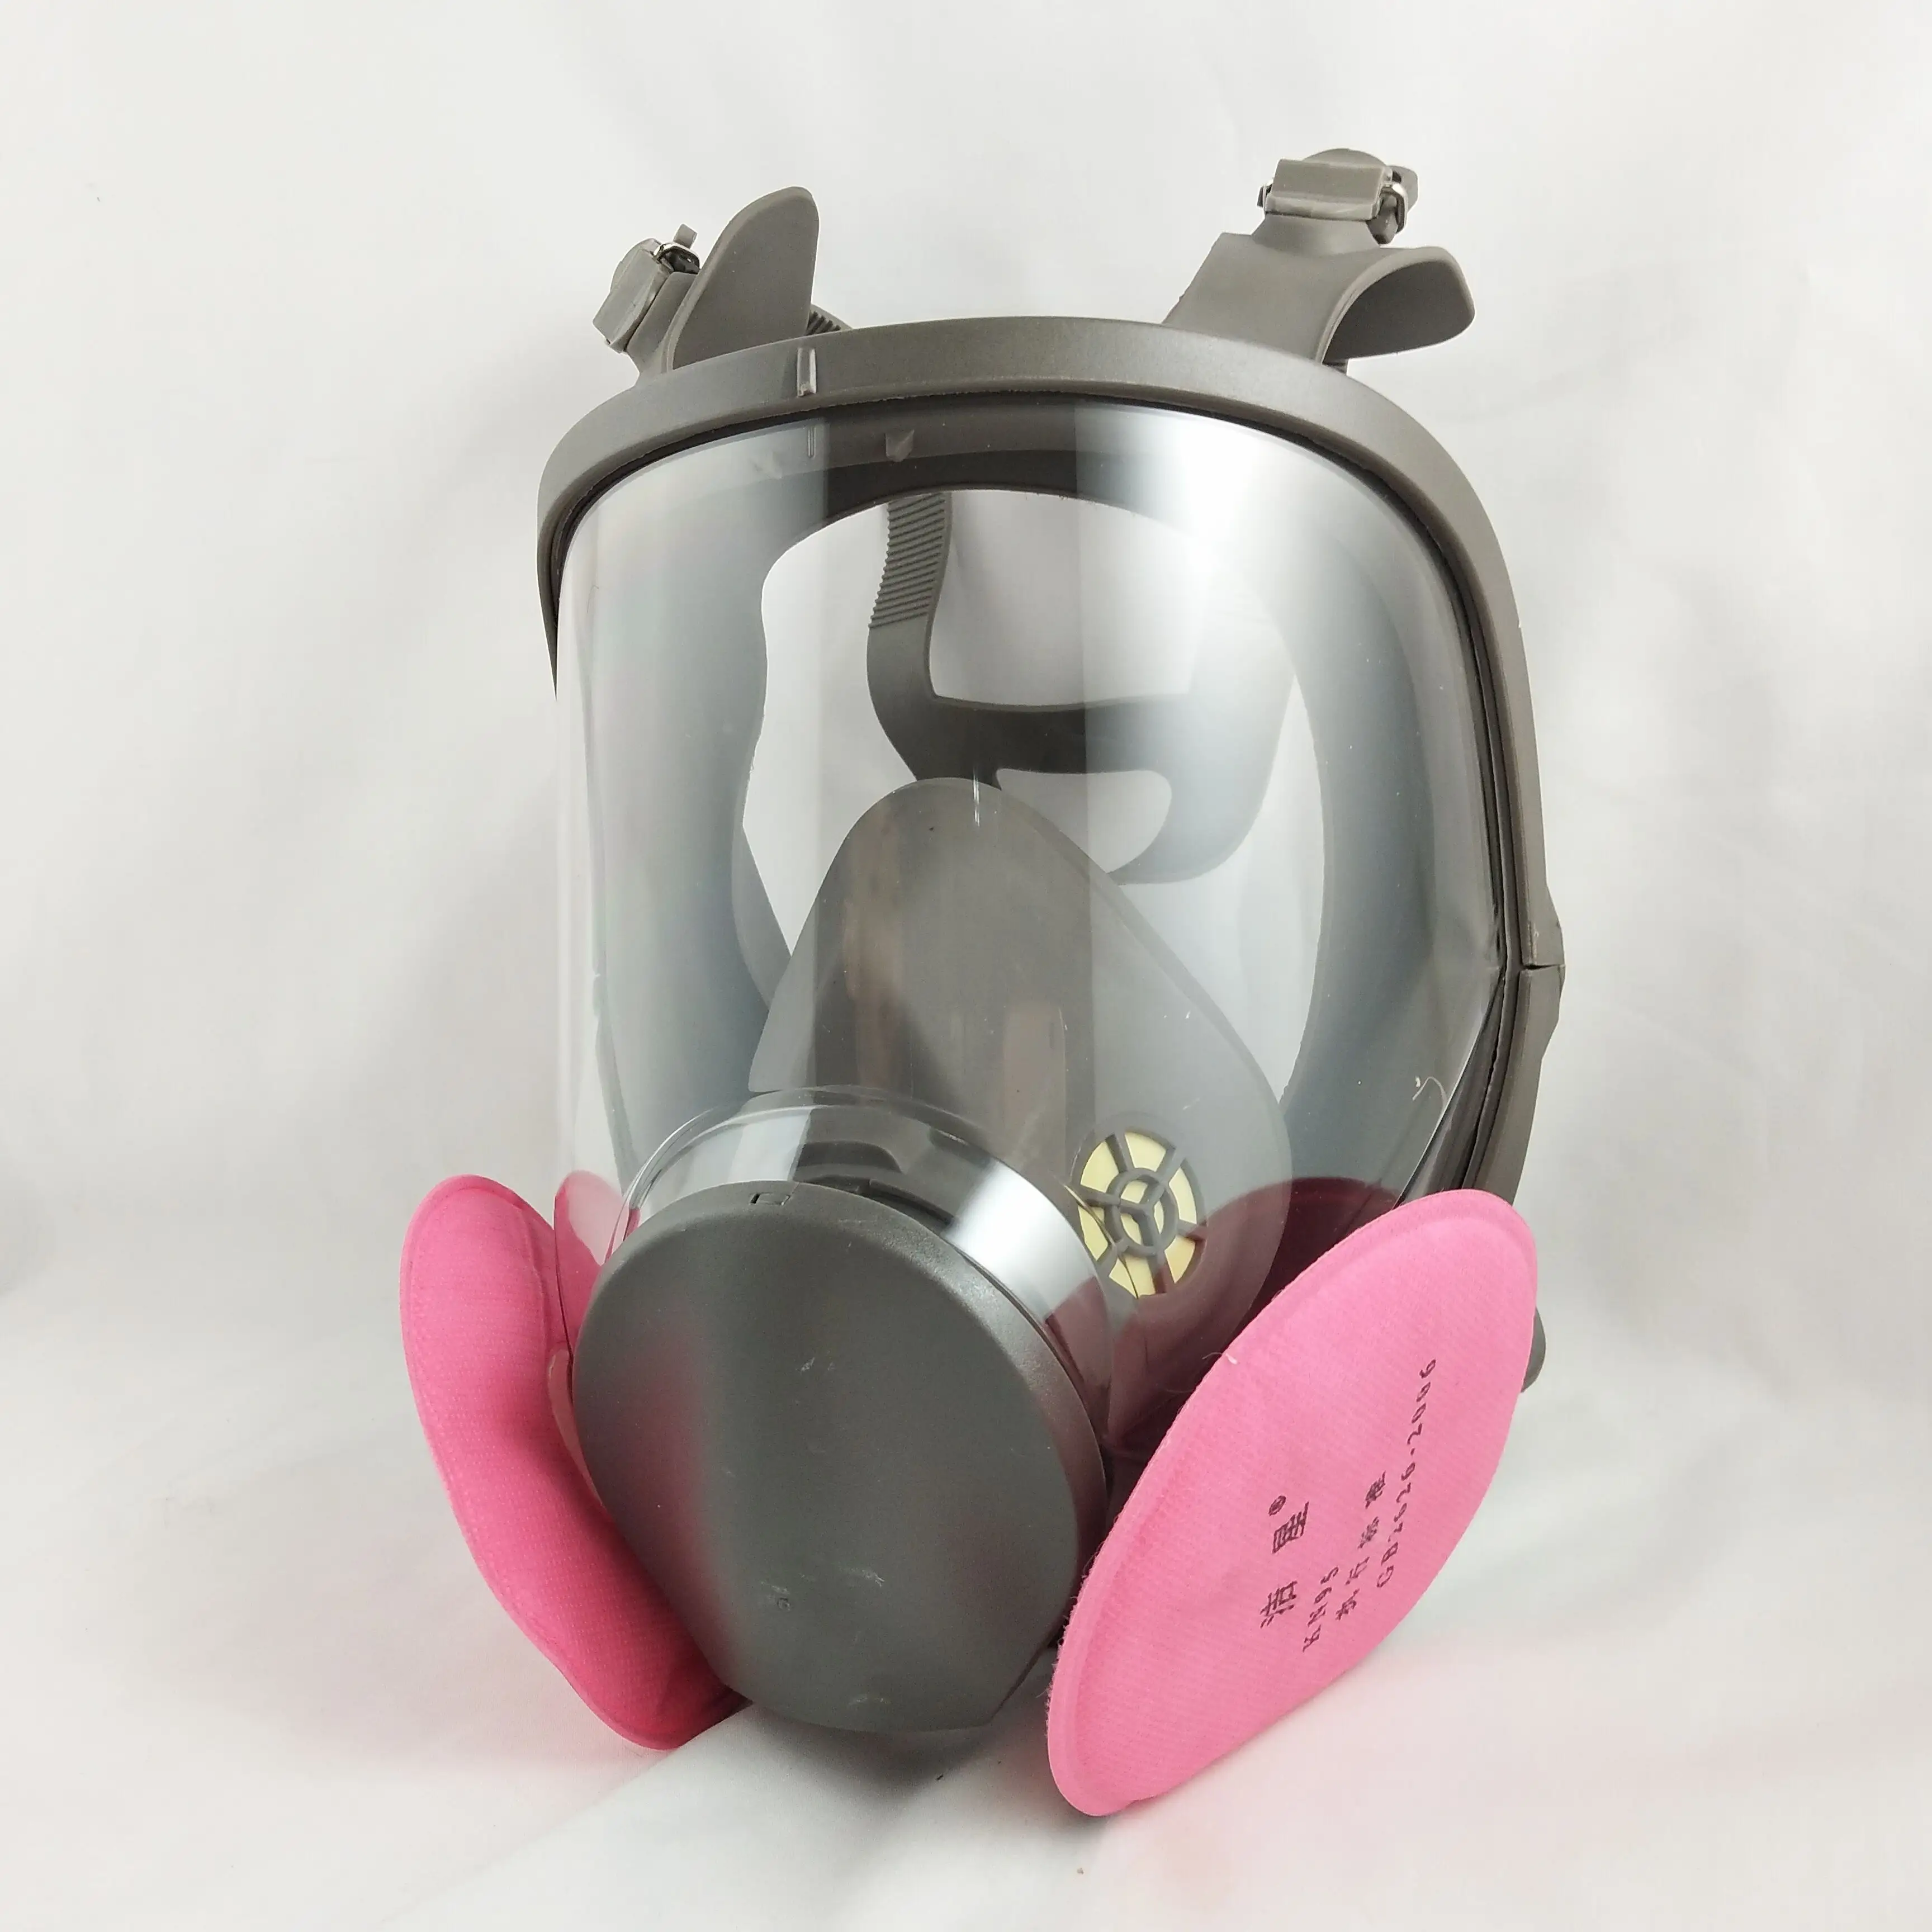 Поставка с завода, удобная многоразовая безопасная противогазовая маска для полного лица, 6900 для защиты органов дыхания